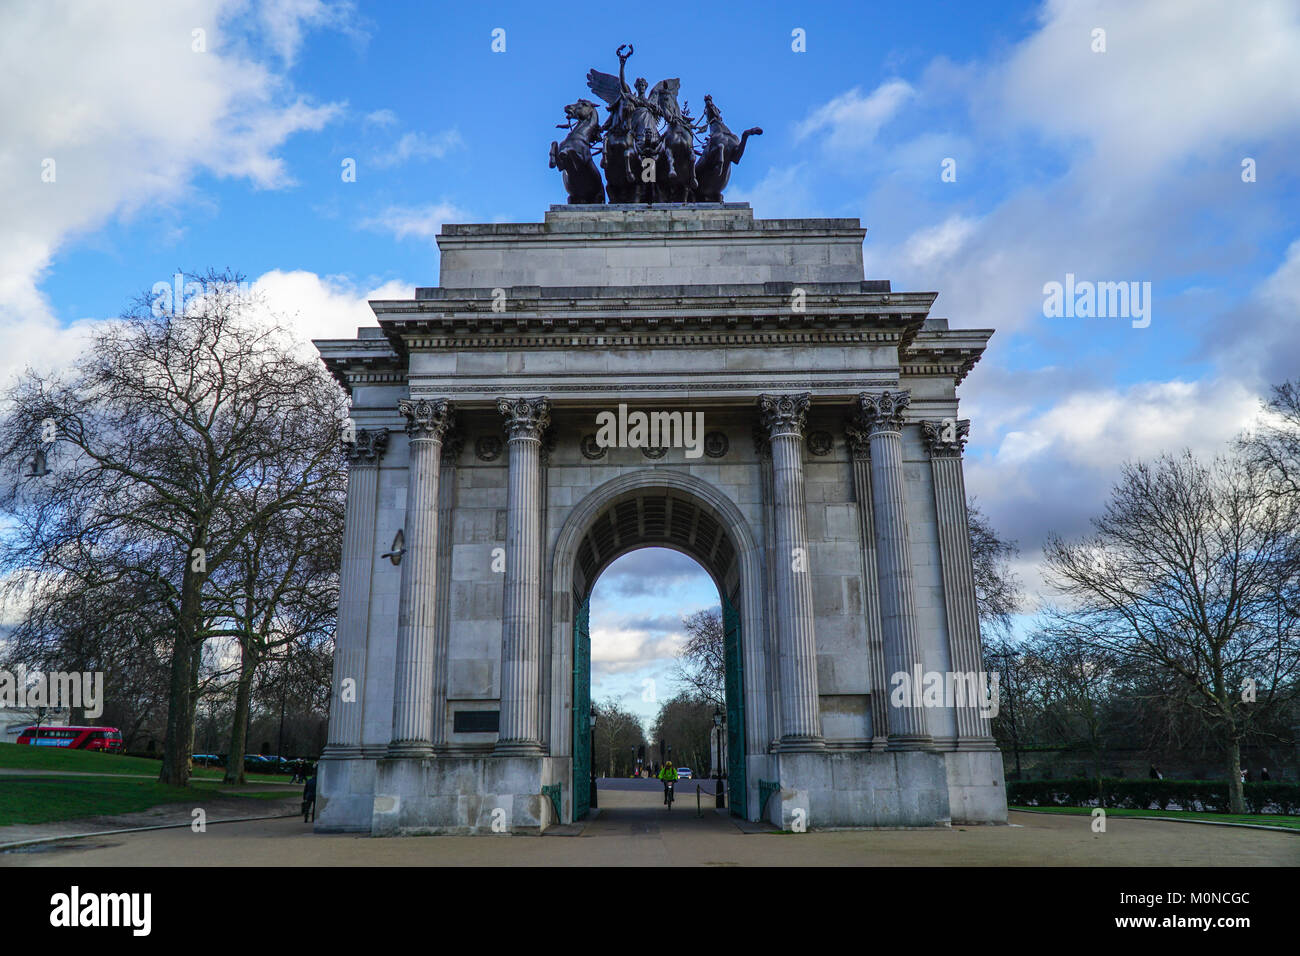 Constitution ou Wellington Arch Arch est un arc de triomphe situé à au sud de Hyde Park à Londres. Ciel nuageux spectaculaires. Banque D'Images